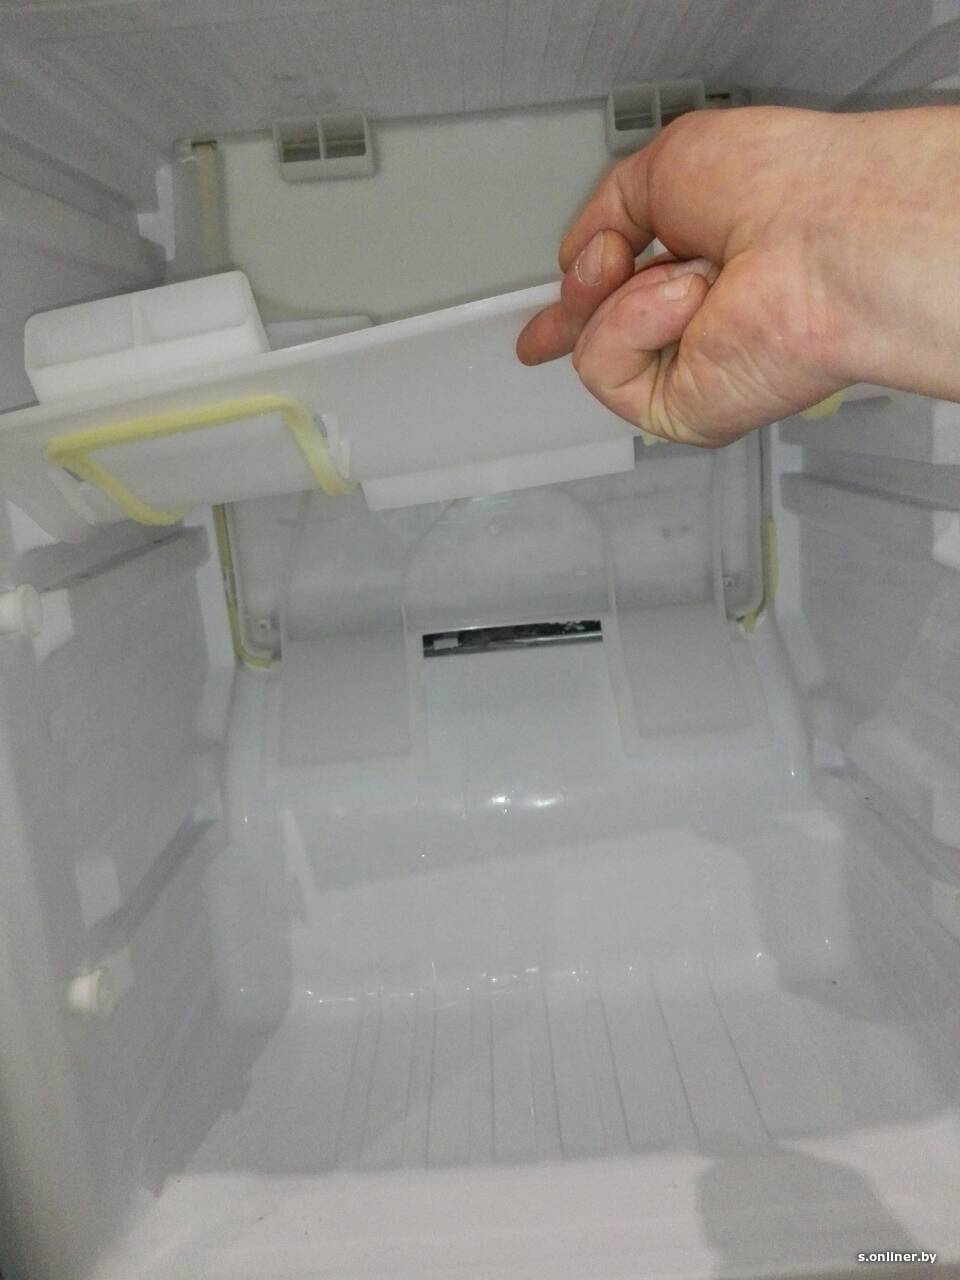 Как прочистить сливное отверстие в холодильнике, если оно забилось